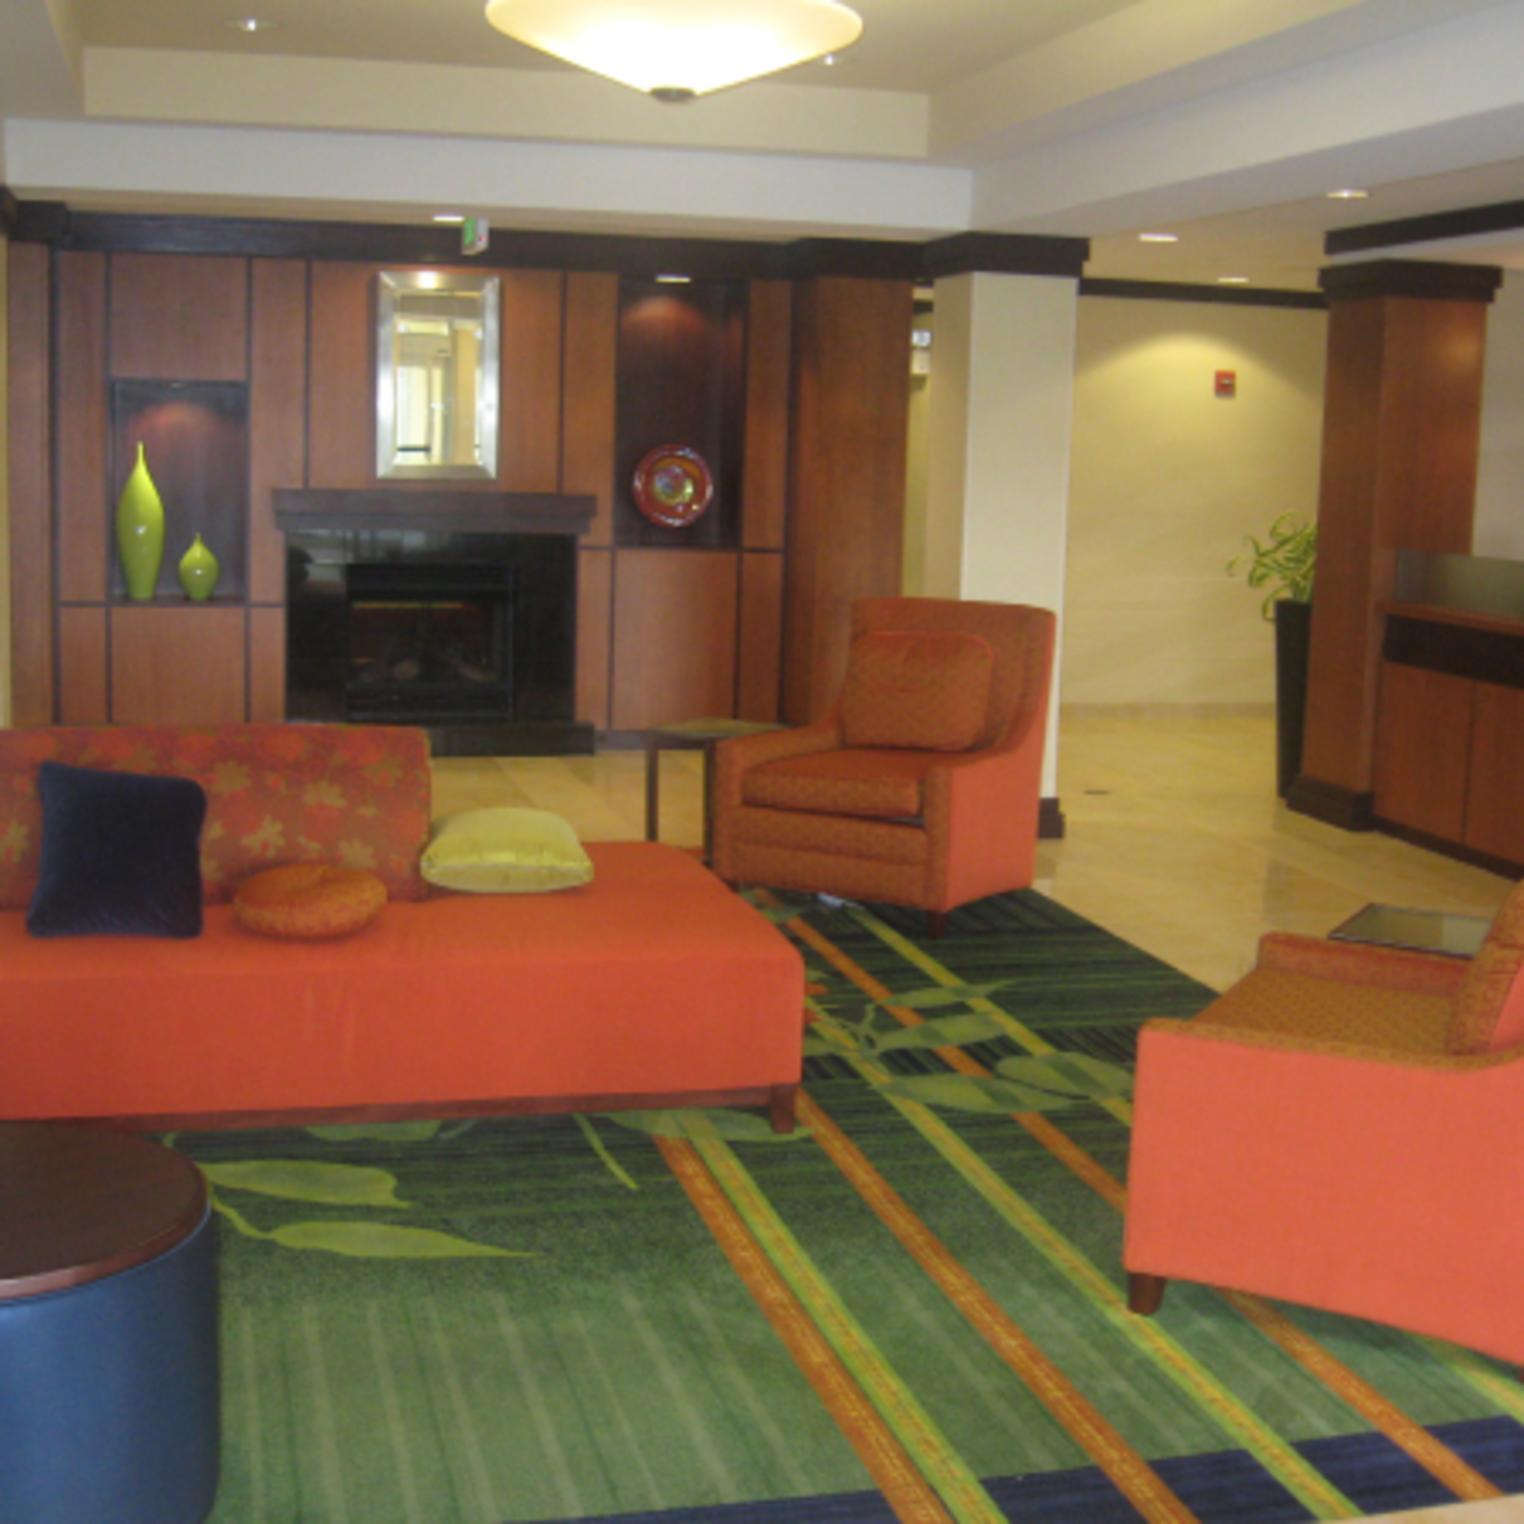 Fairfield Inn & Suites Carlisle lobby area